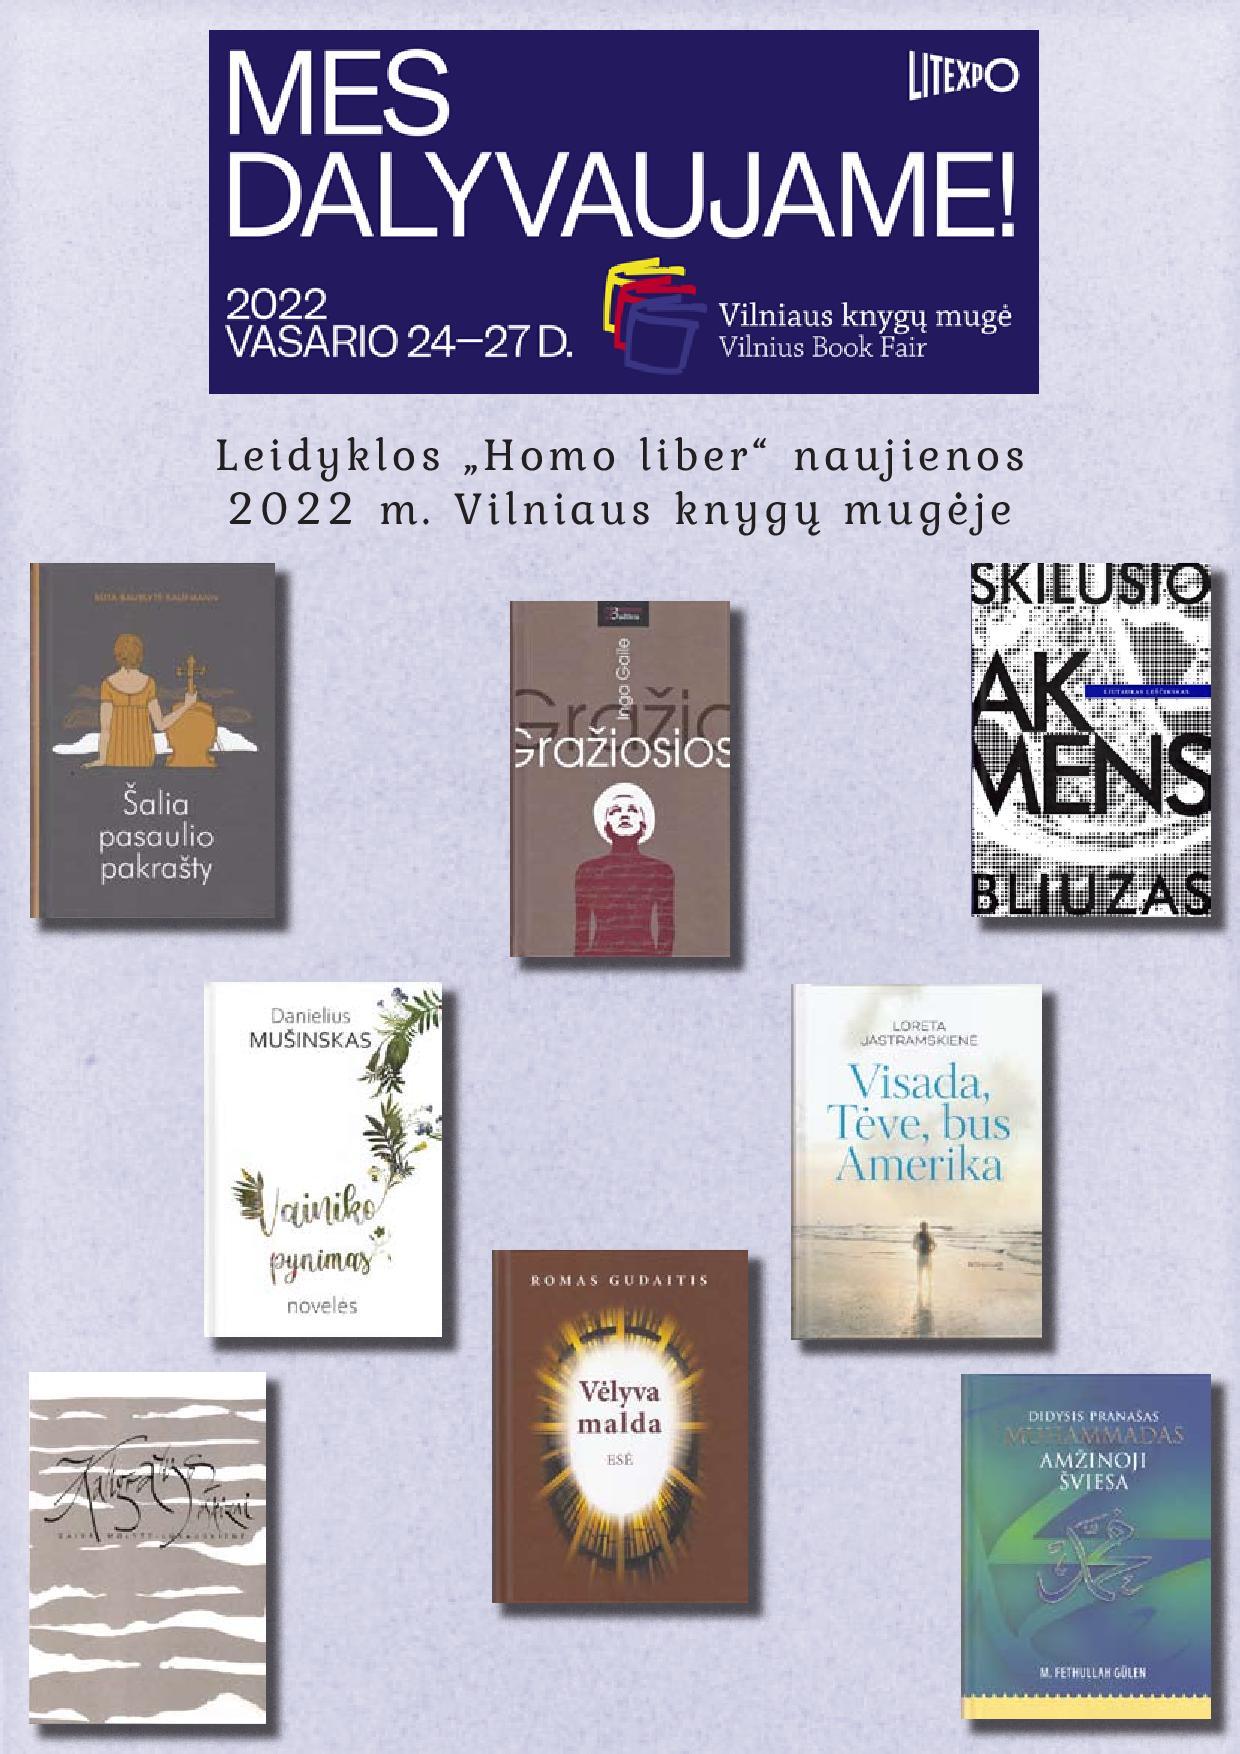 Leidyklos „Homo liber“ naujienos 2022 m. tarptautinėje Vilniaus knygų mugėje